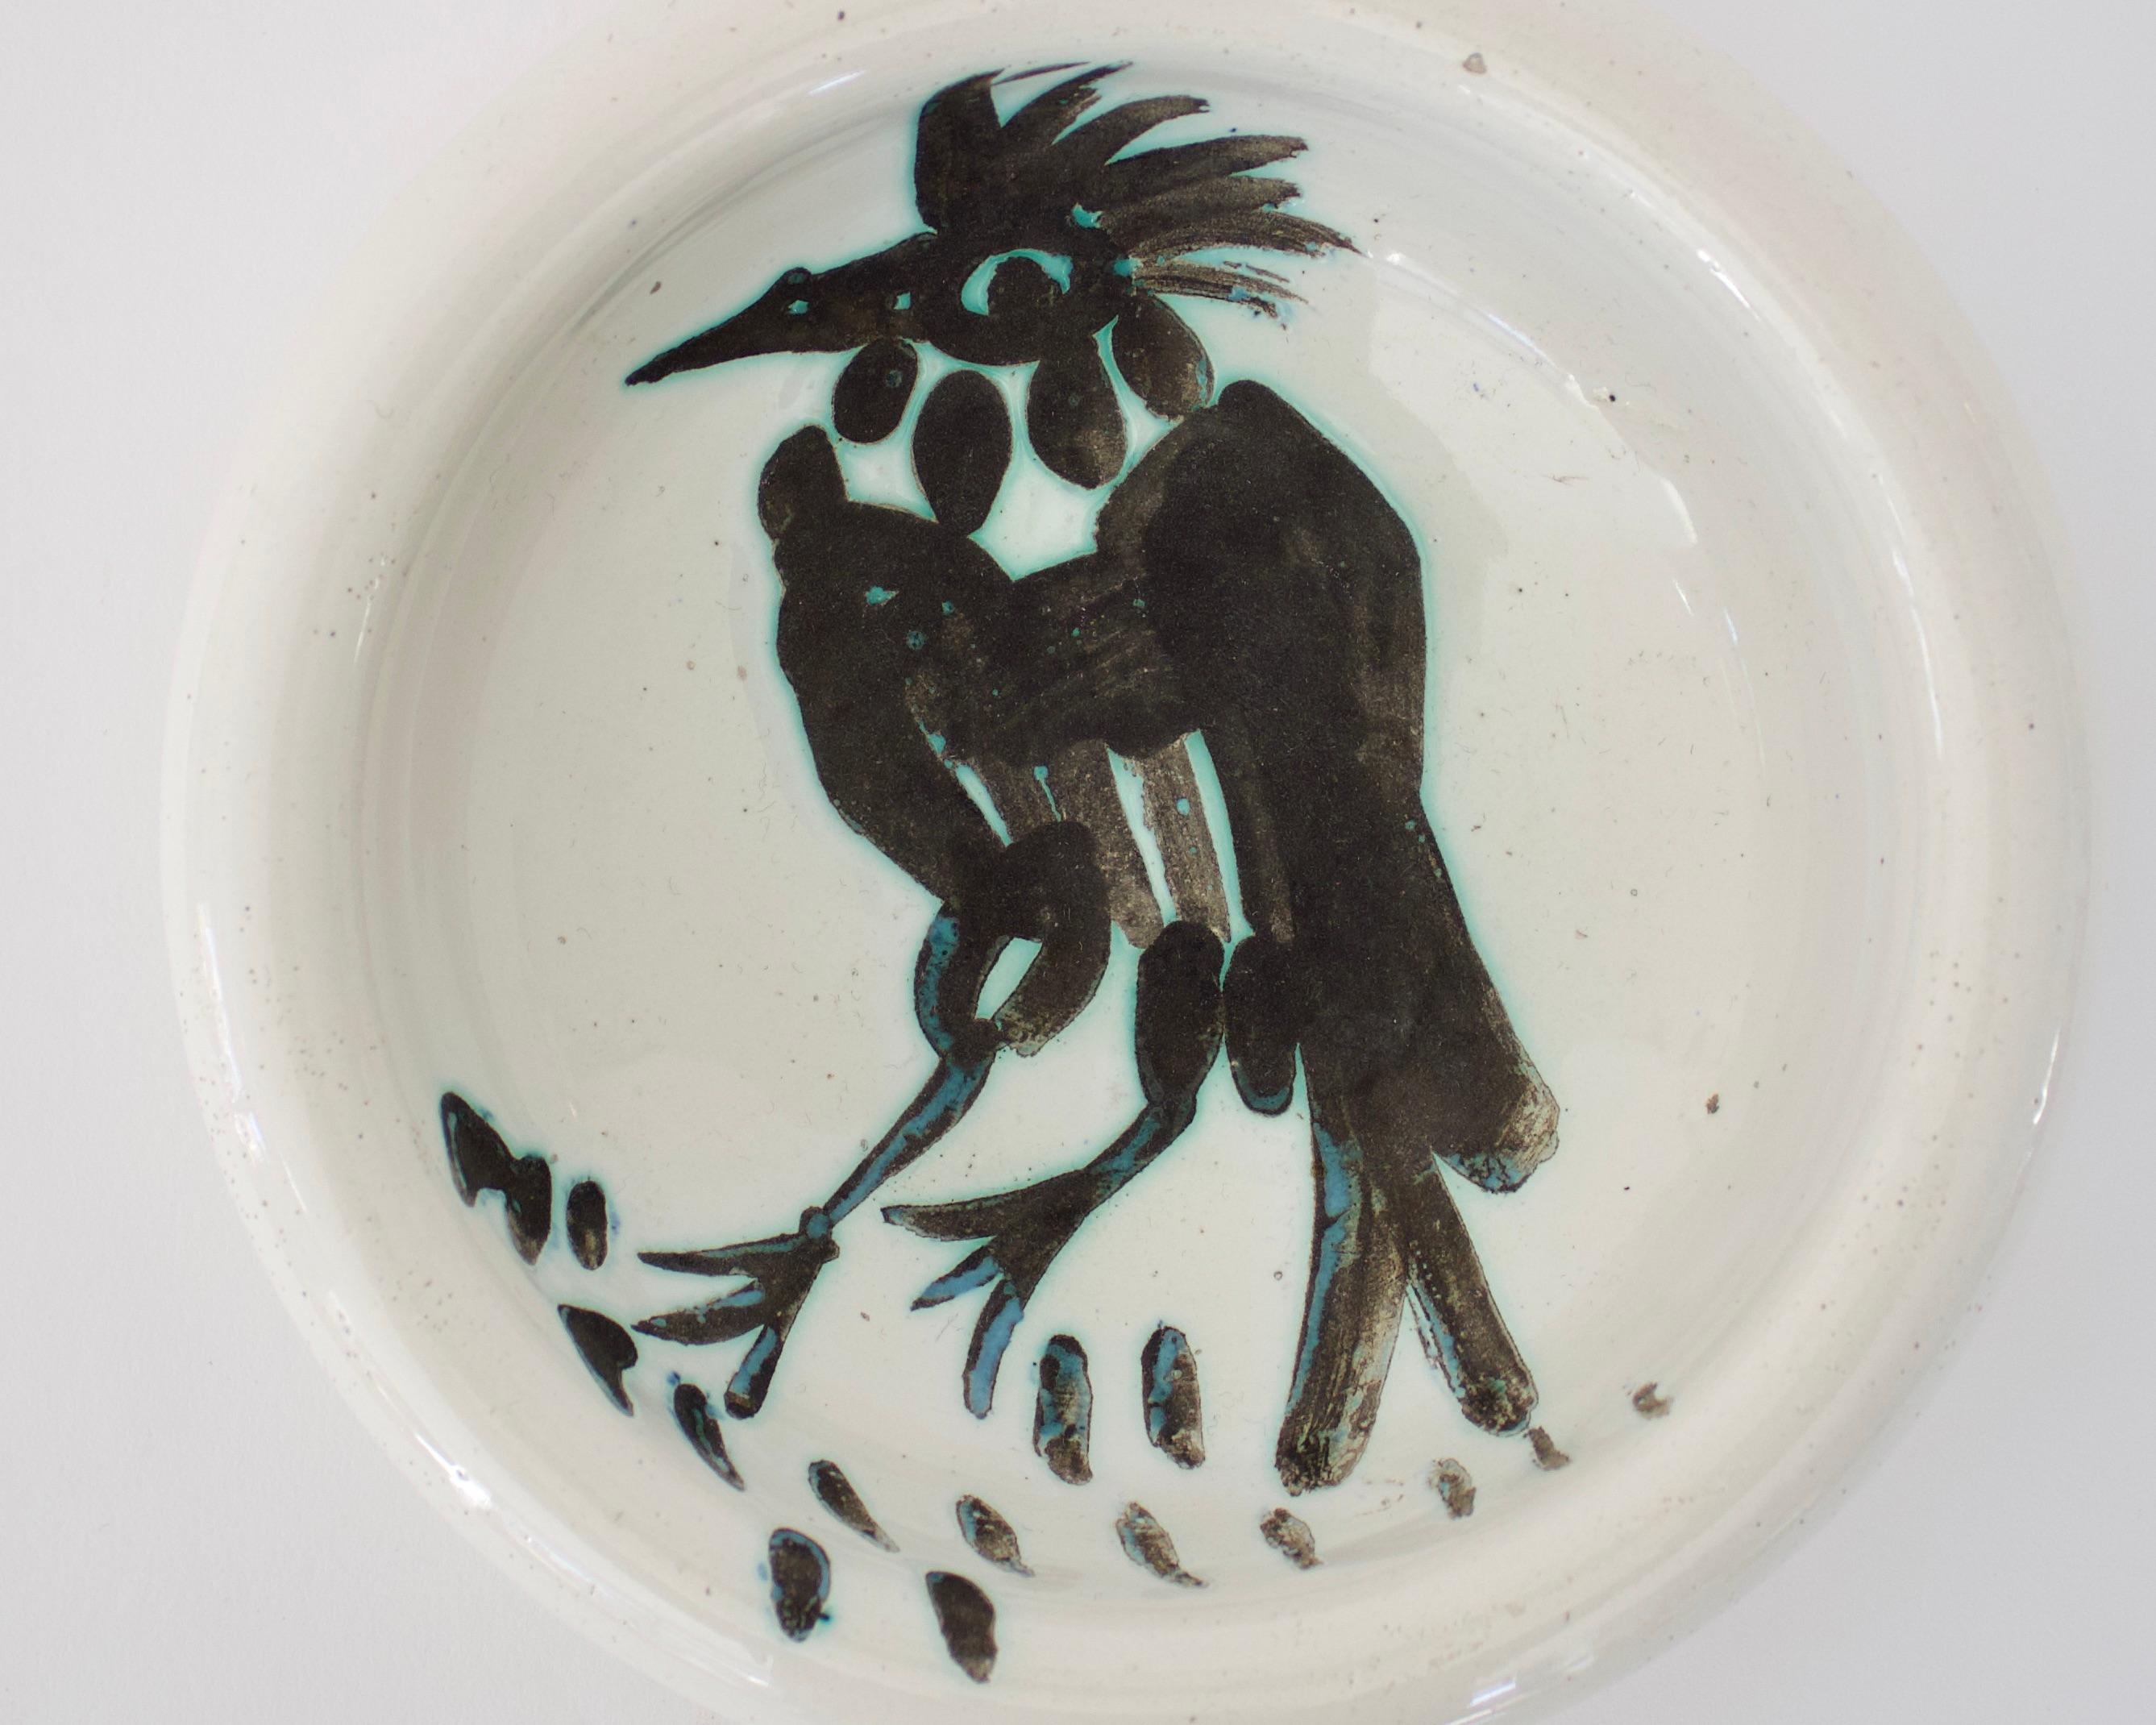 Pablo Picasso Oiseau plat avec touffe et bec pointu, éditions Picasso Madoura France. Circa 1952. 15 coups de pinceau peints à la main sous les pattes des oiseaux, faisant référence à la nourriture. 
Impression avec marque sur le dessous Madoura